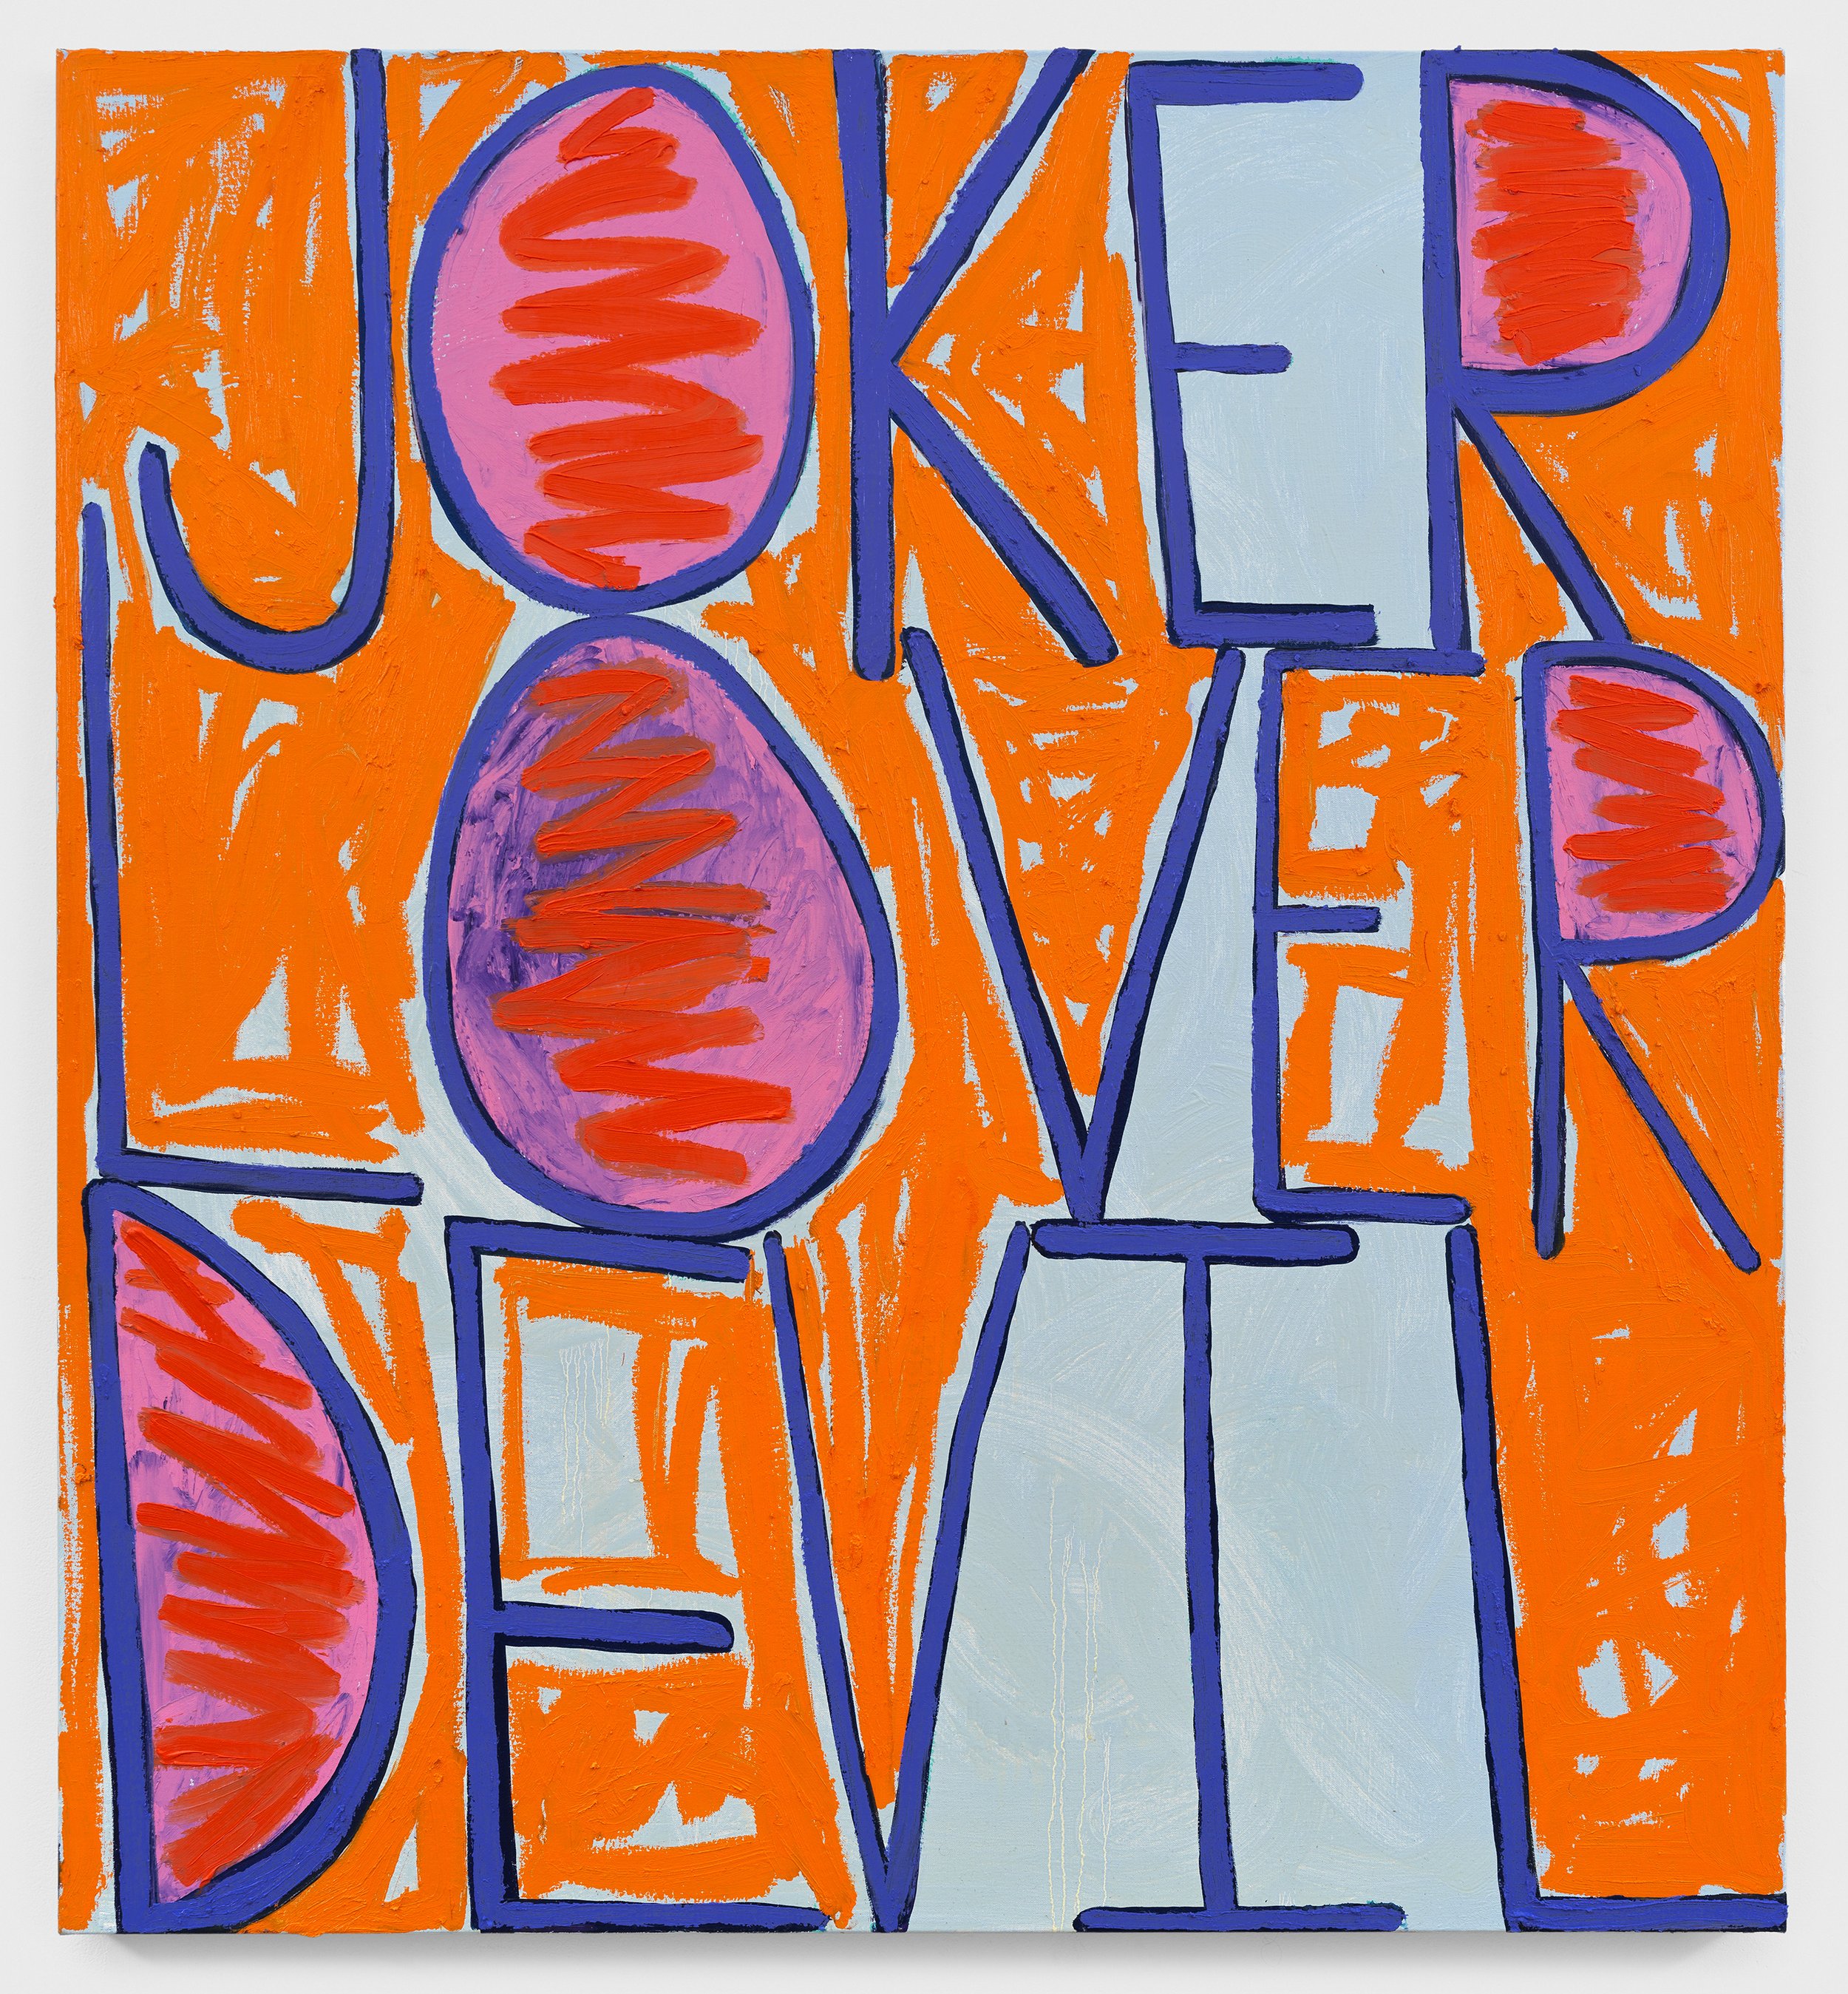  Sam Jablon  Joker Lover Devil,  Oil on linen  48 x 44 in. 